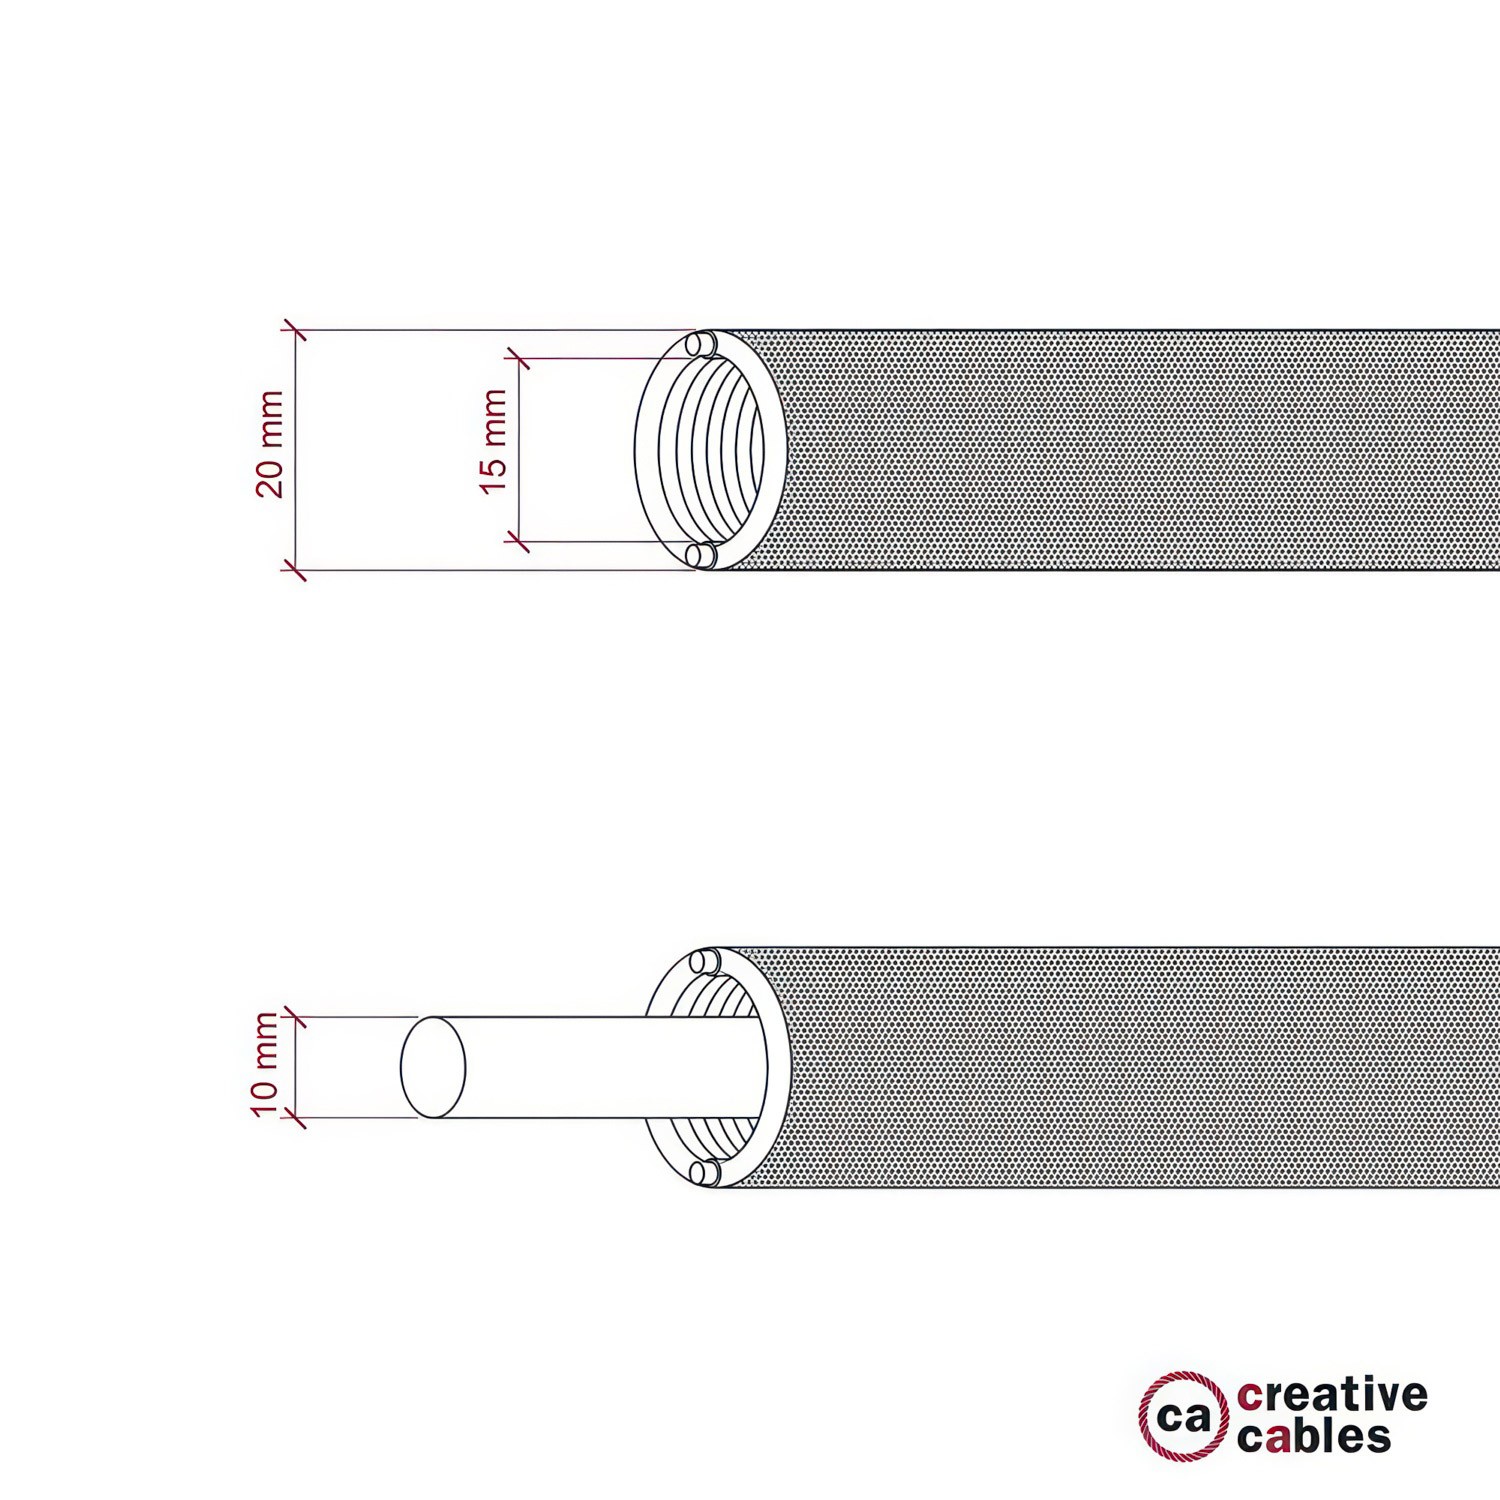 Tubo flexible Creative-Tube, revestido de tejido Efecto 3D Estrellas RT41, diámetro 20 mm